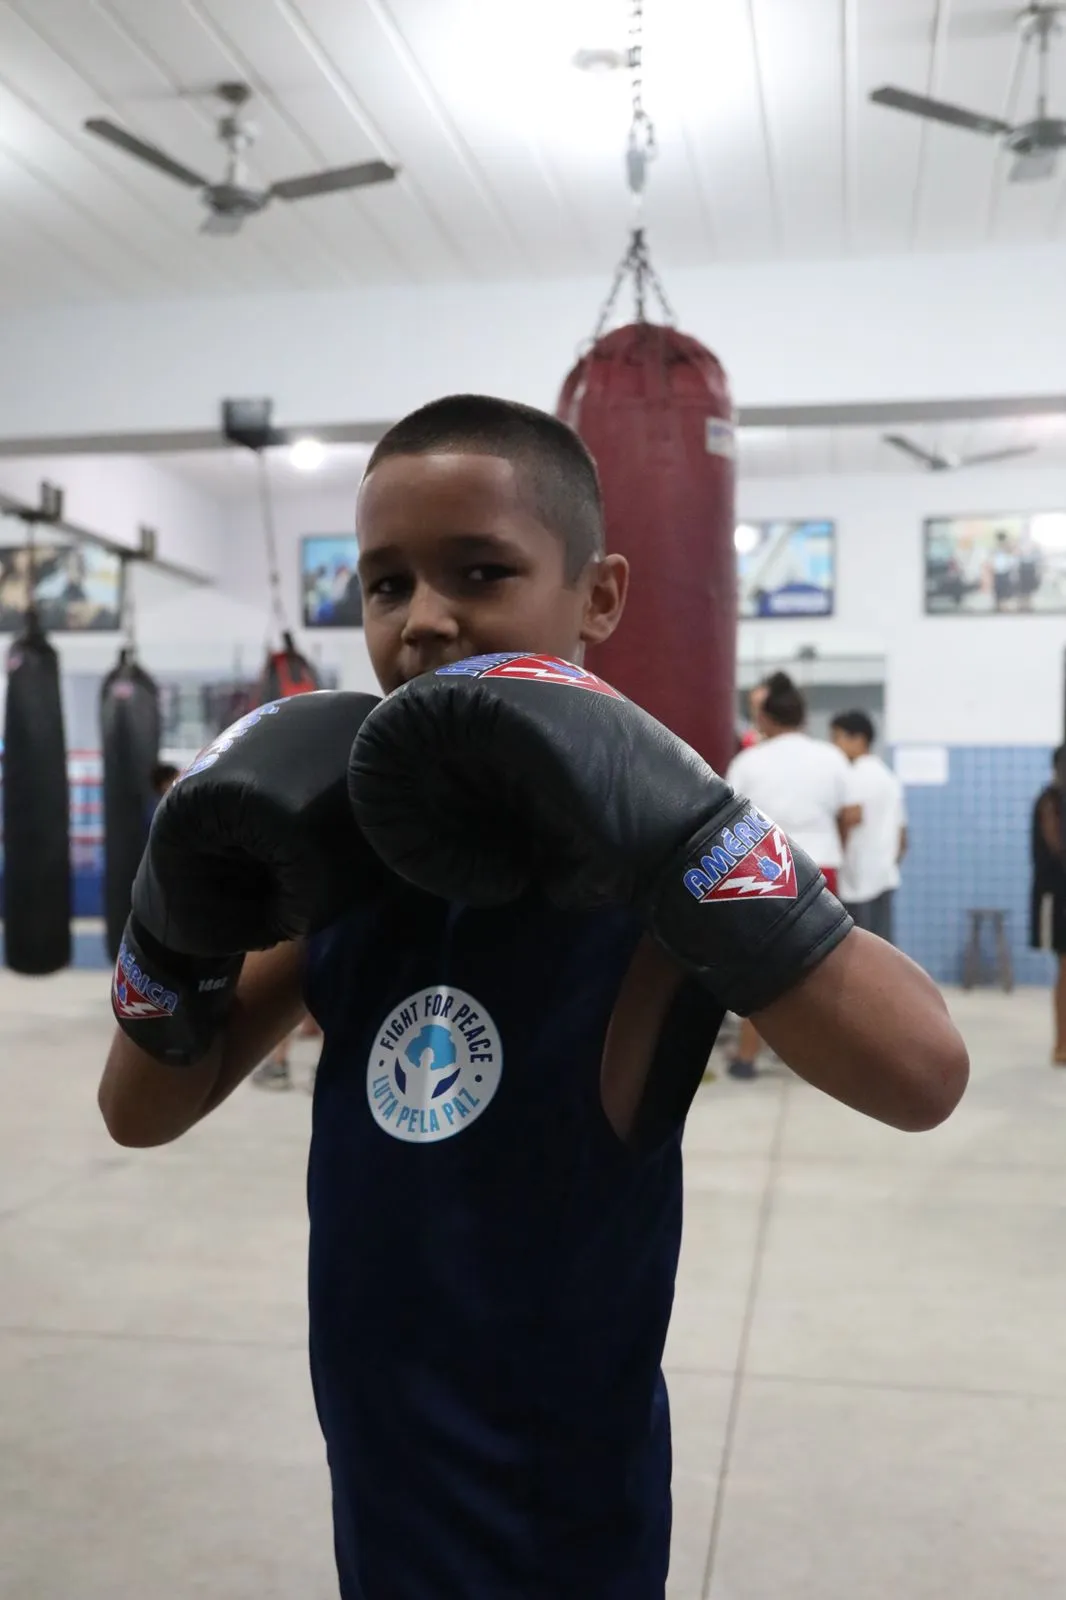 Jovens de comunidades carentes do Rio vão participar de competição de lutas